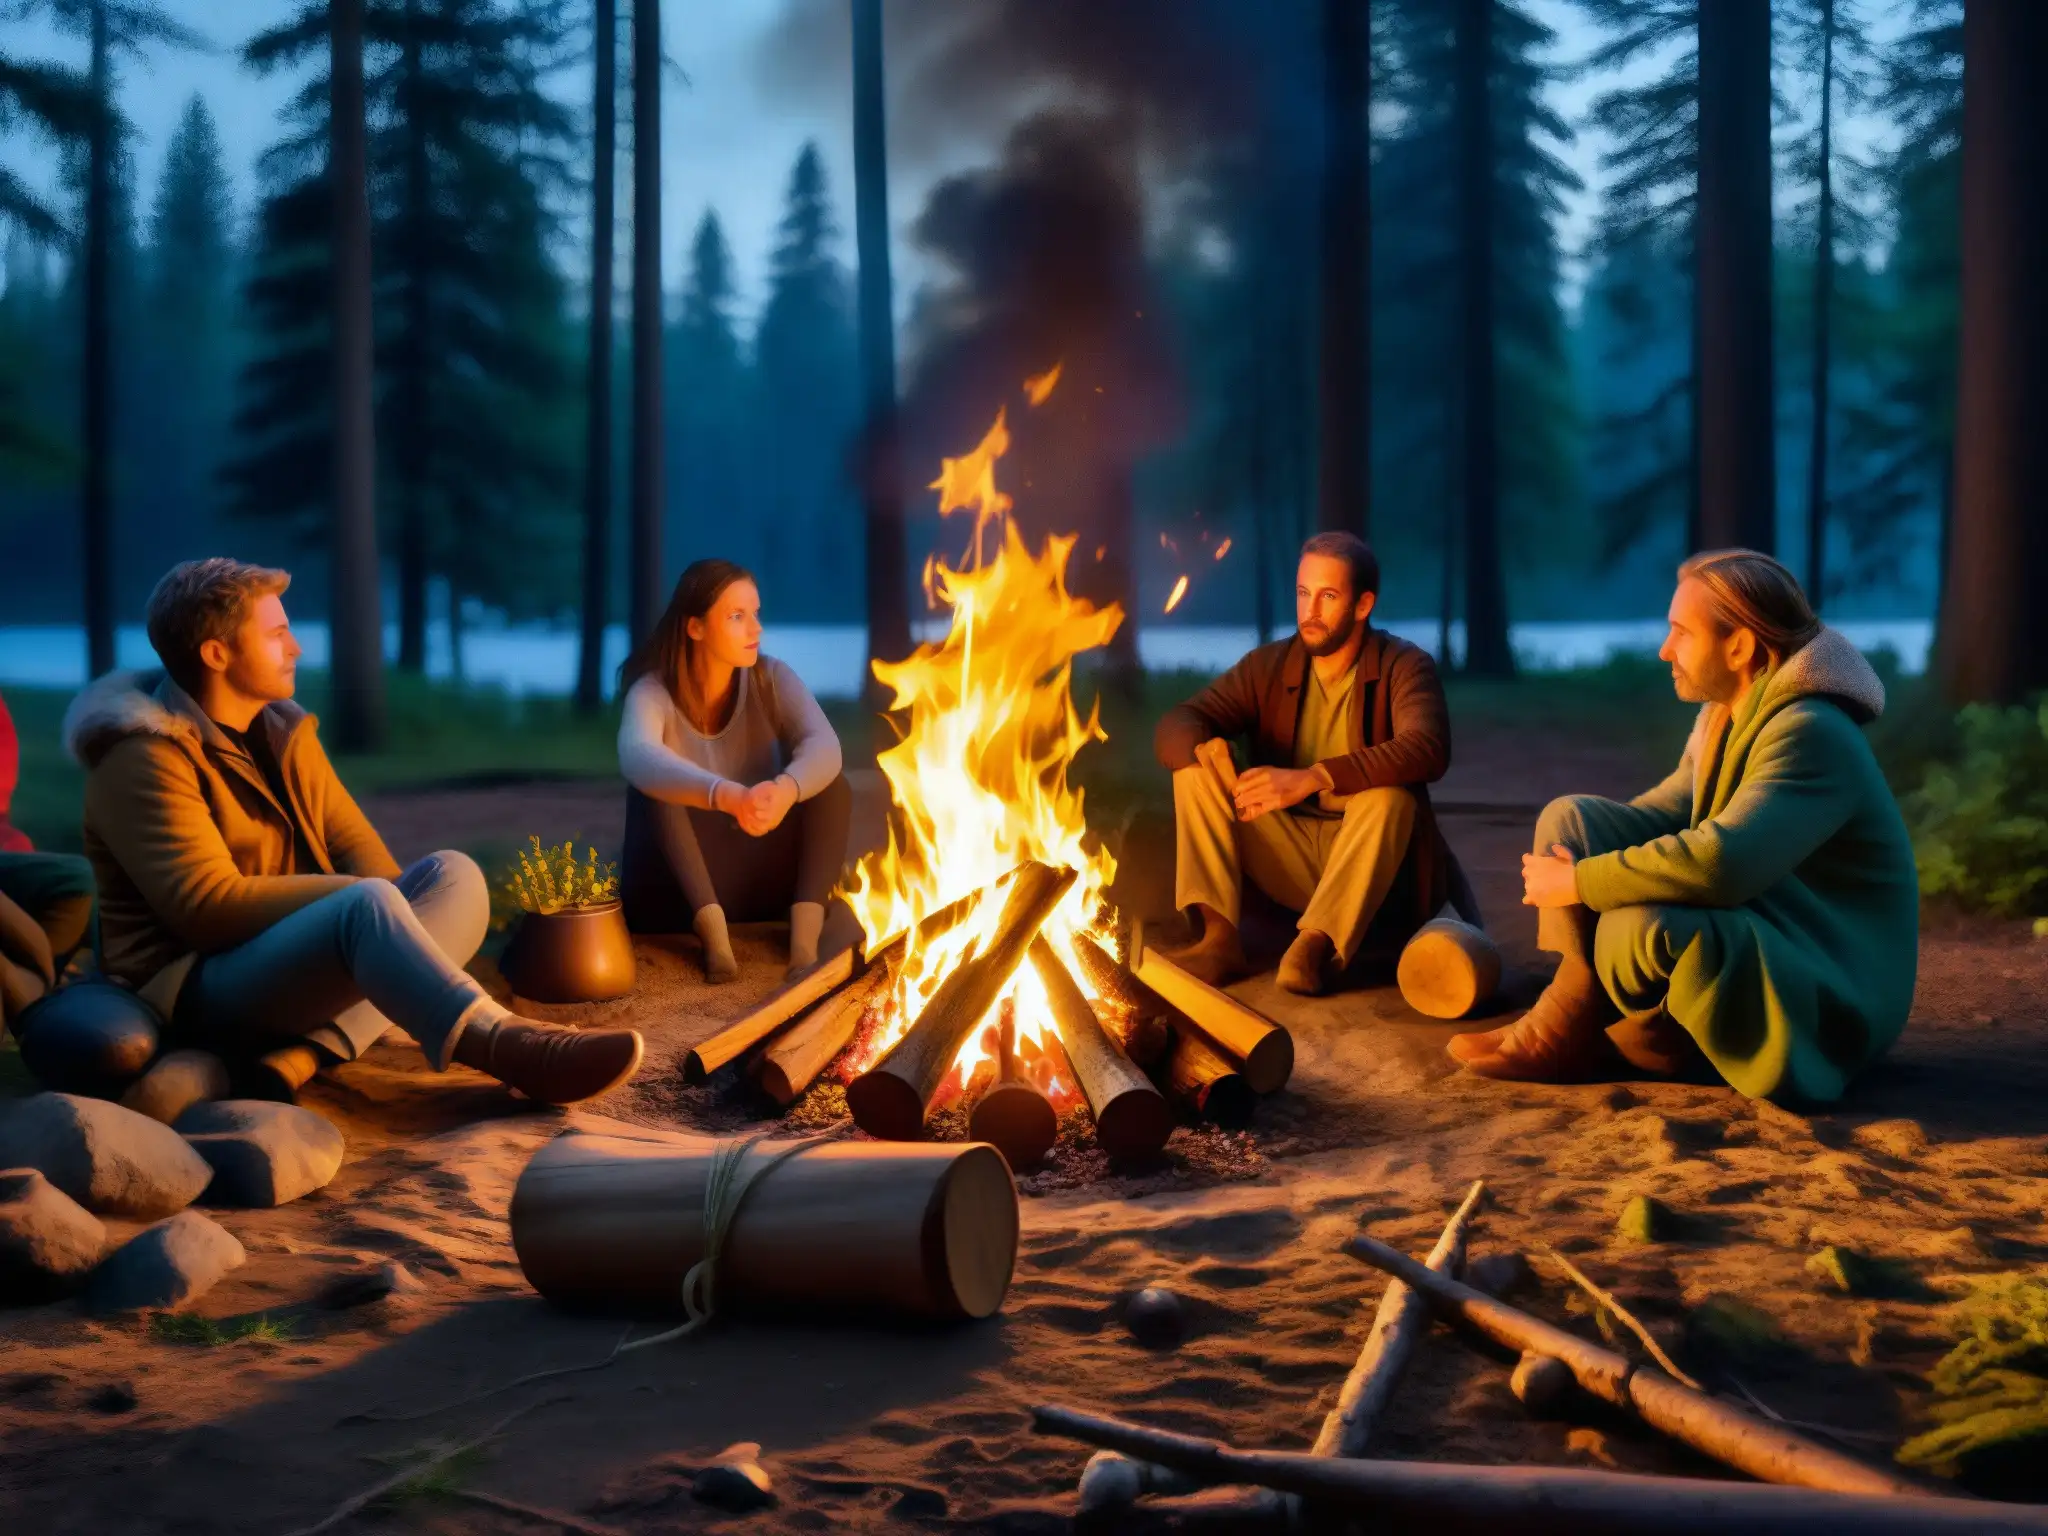 Un grupo de personas escucha atentamente a un narrador junto a una fogata en el bosque de noche, iluminados por las llamas